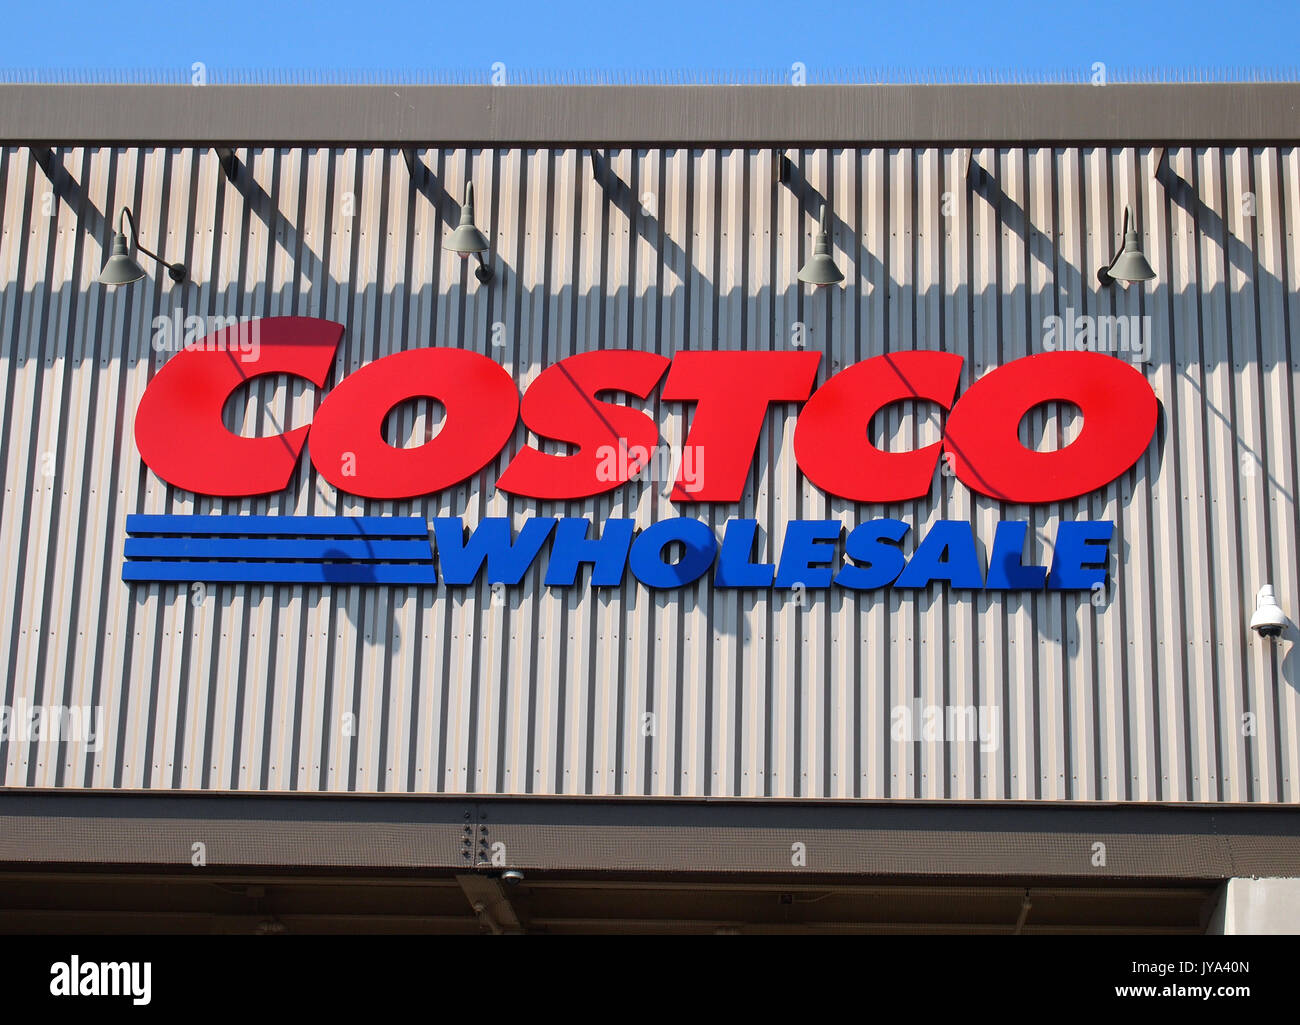 Costco wholesale store, California Stock Photo